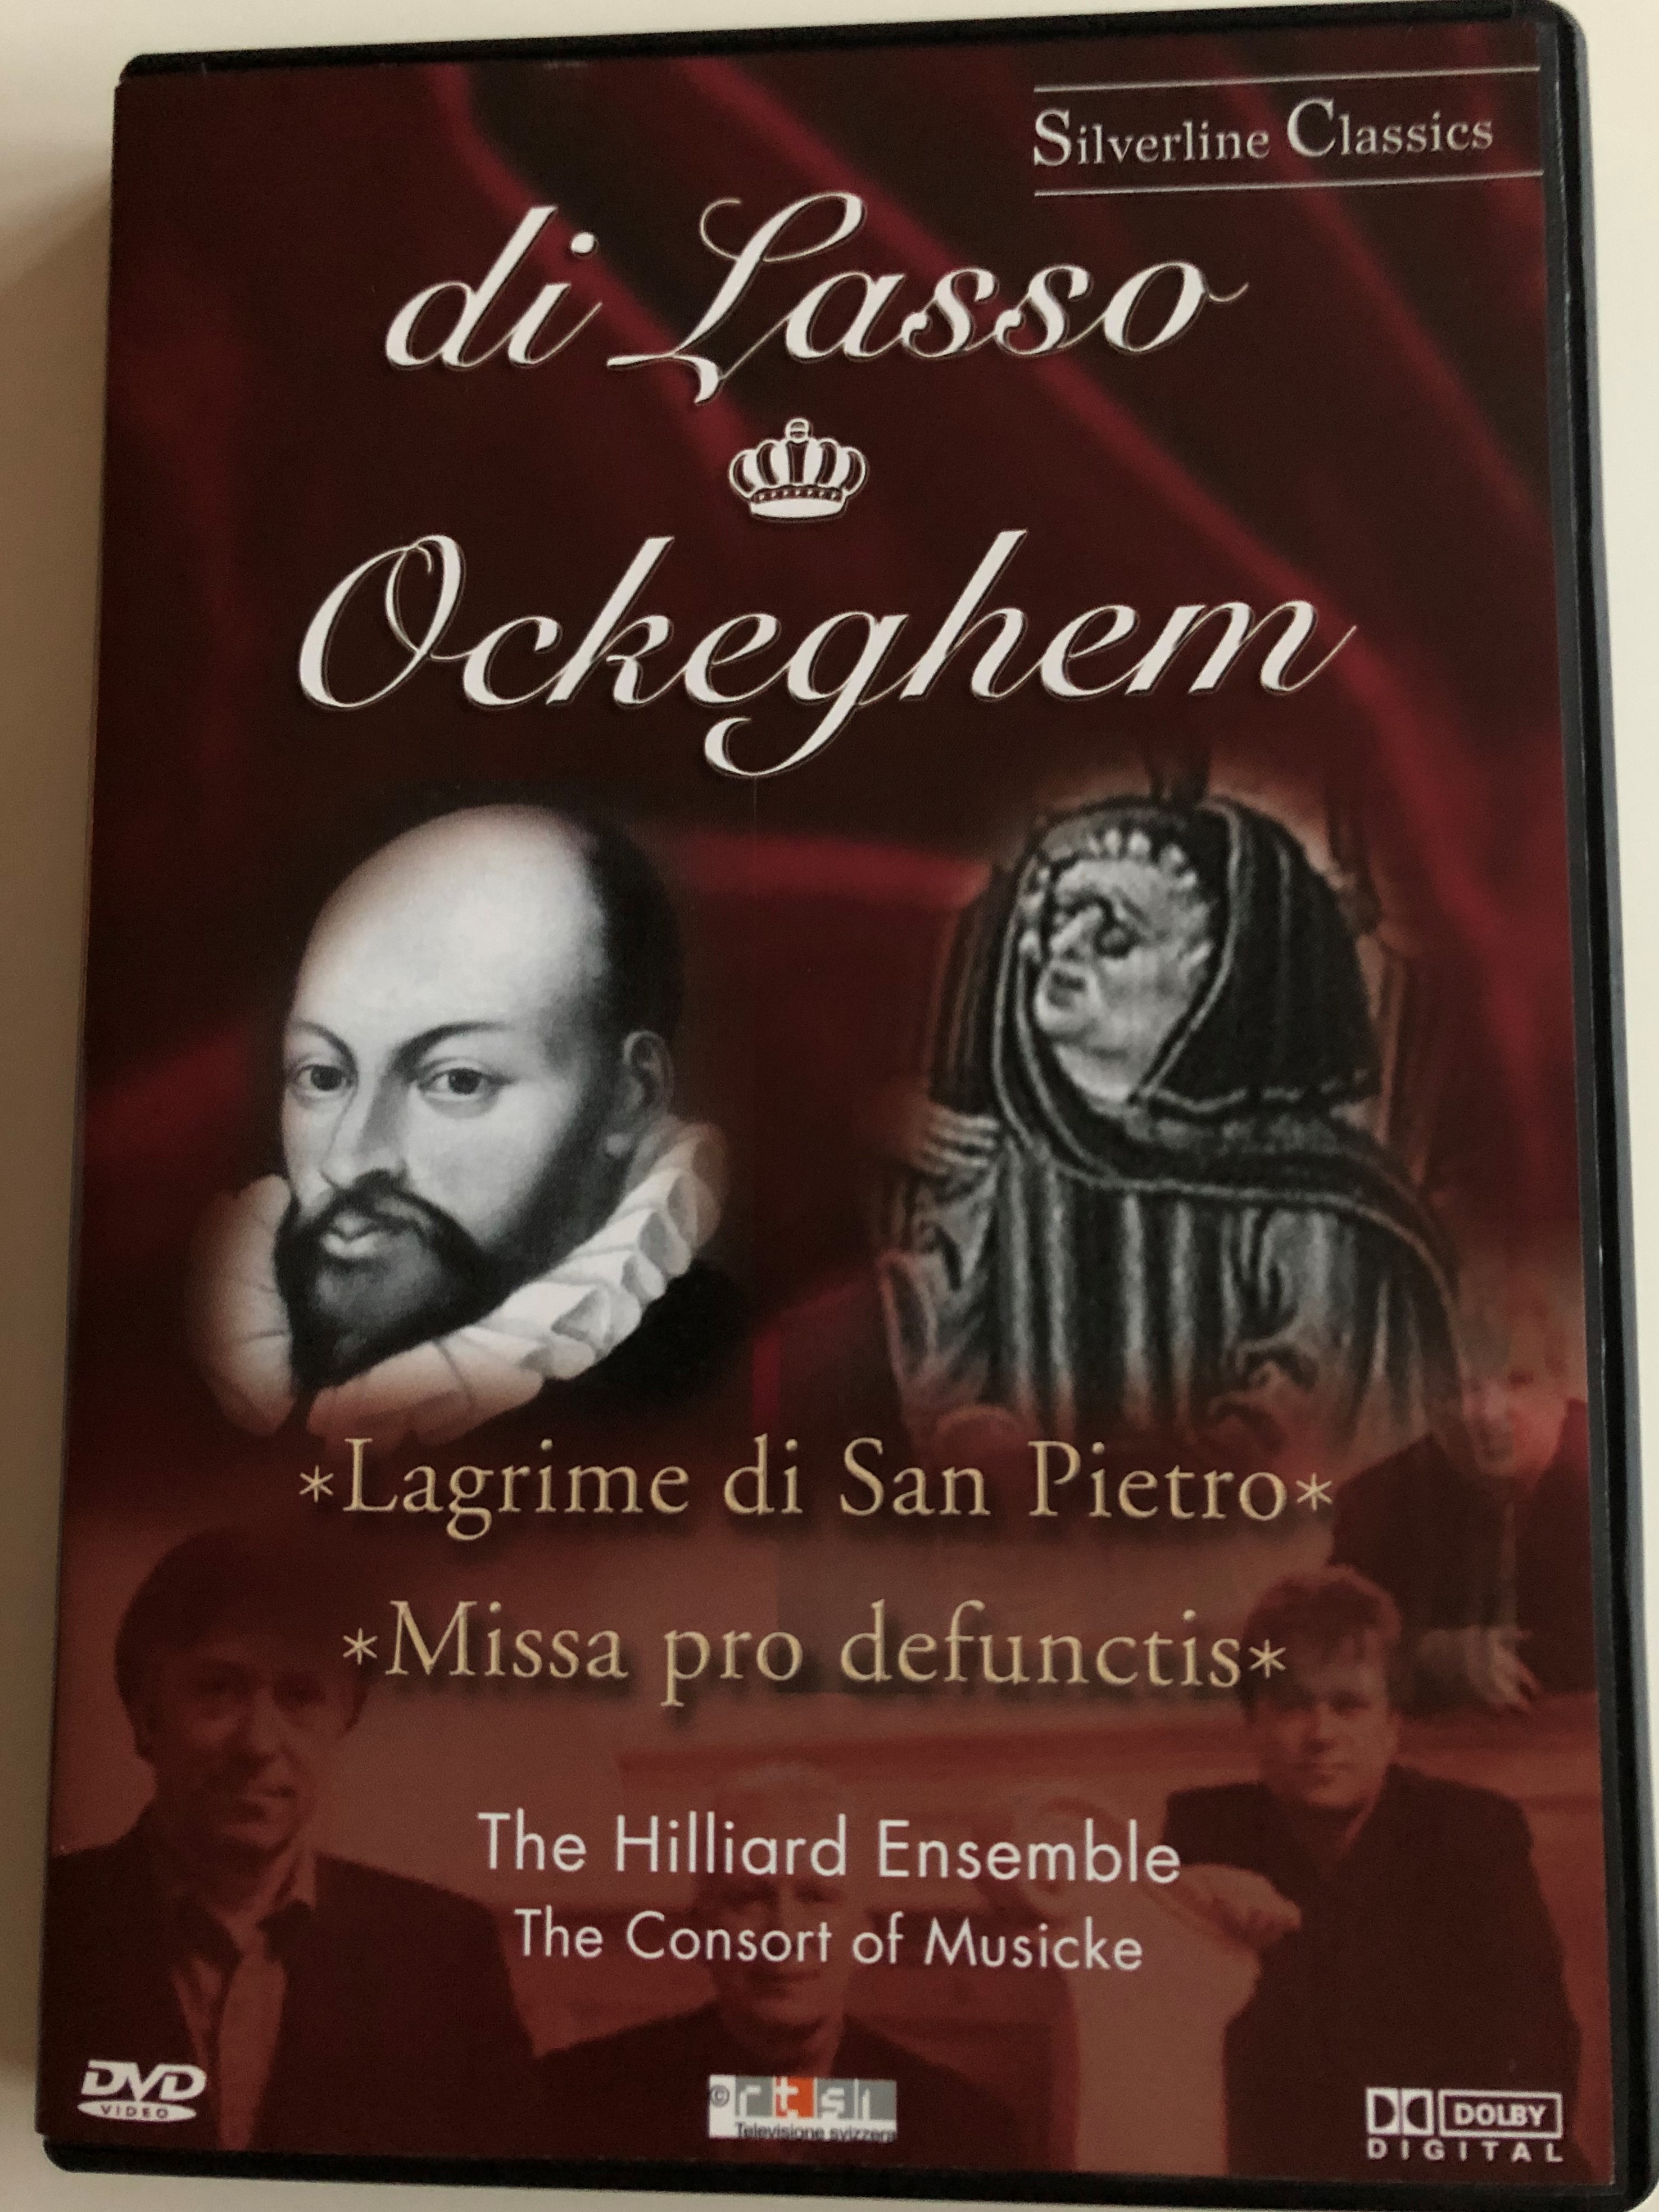 di-lasso-ockeghem-lagrime-di-san-pietro-missa-pro-defunctis-the-hilliard-ensemble-the-consort-of-musicke-silverline-classics-cascade-medien-dvd-2003-80014-1-.jpg